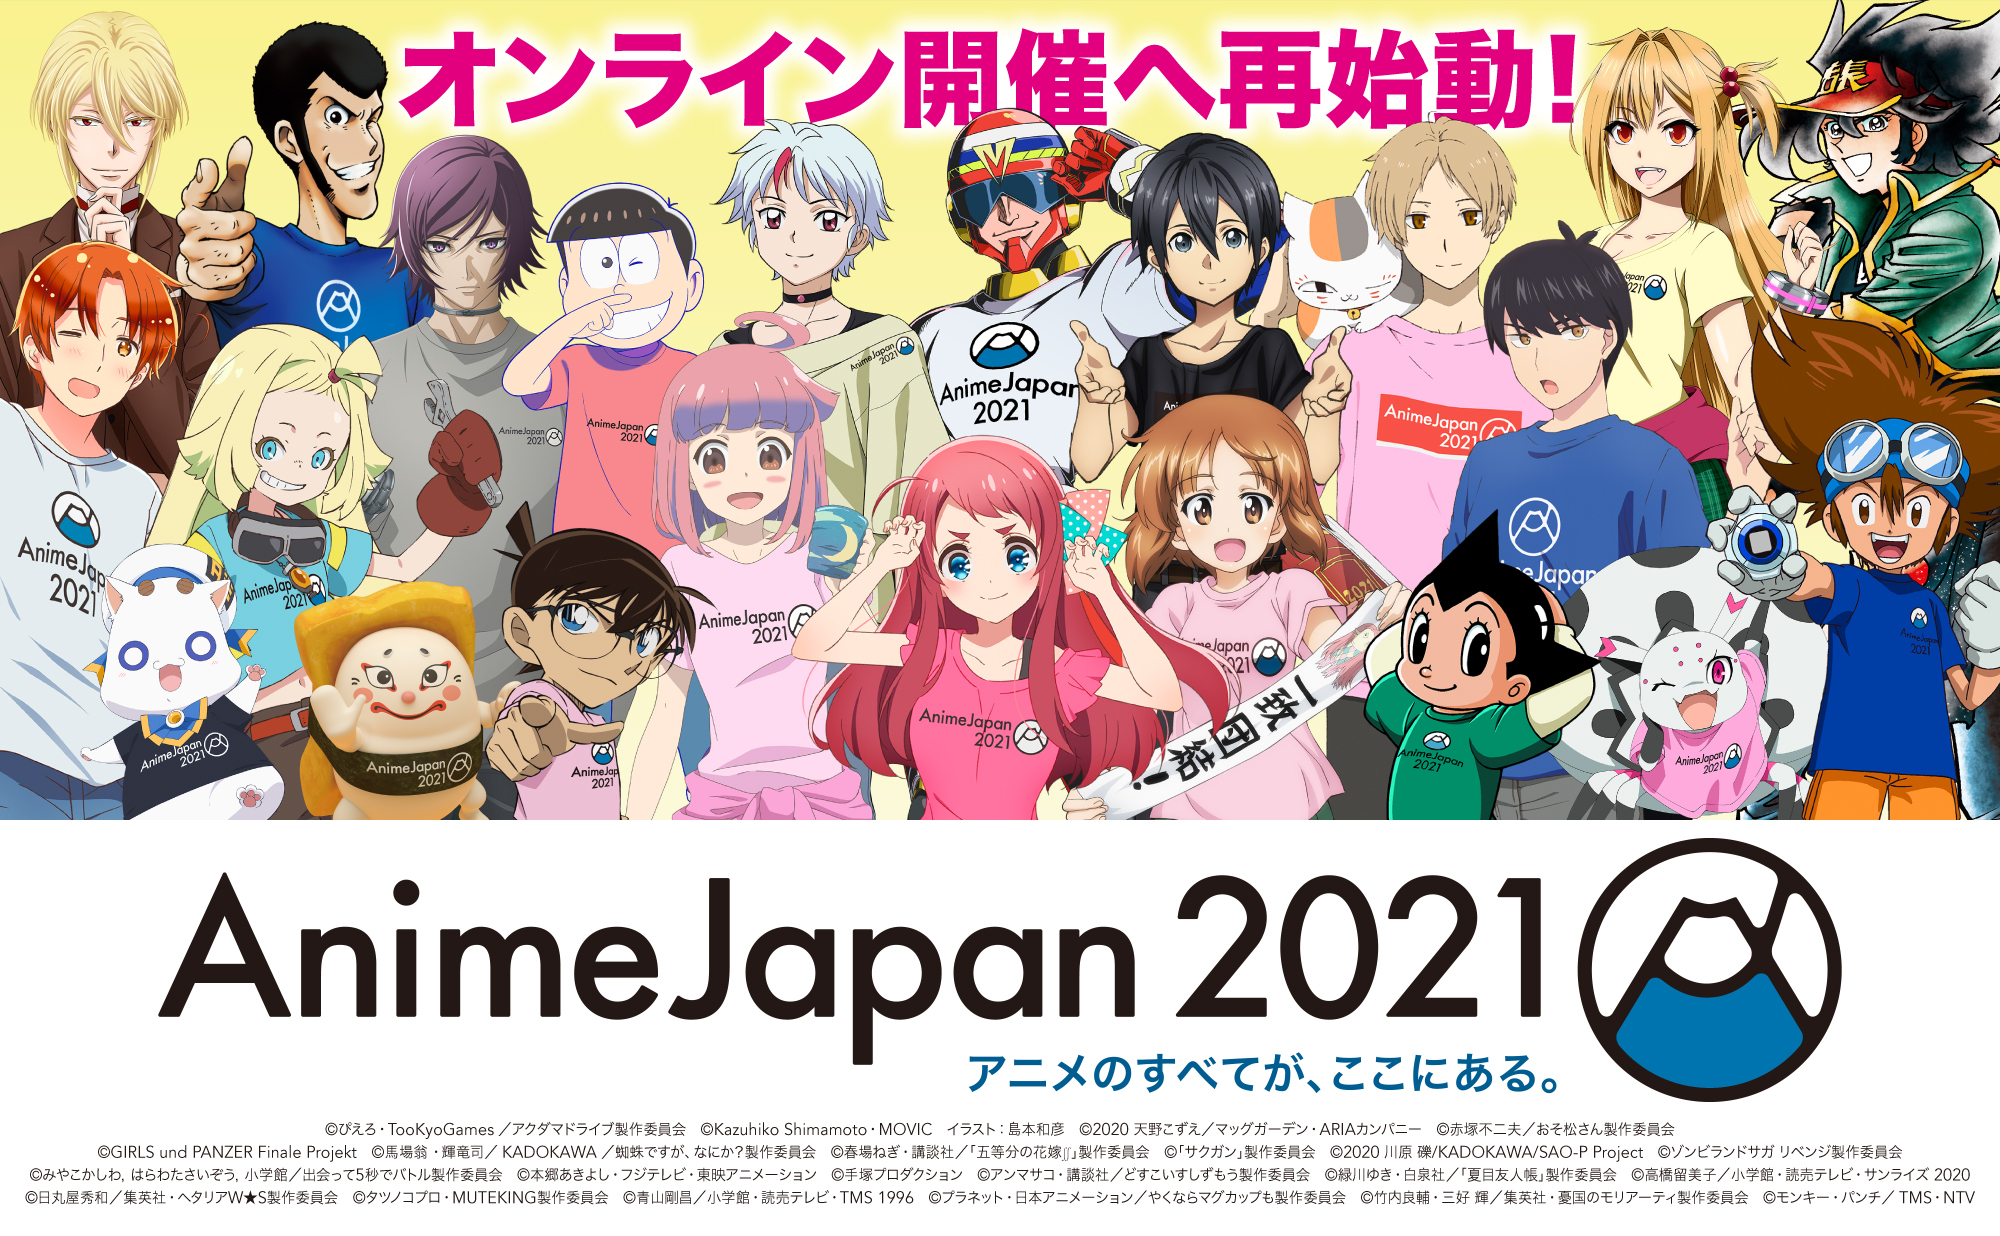 春休み こどもに人気のアニメが大集合 Animejapan併催のファミリー向けイベント ファミリーアニメ フェスタ19 入場無料 プレイコーナーやワークショップもすべて無料 一般社団法人アニメジャパンのプレスリリース